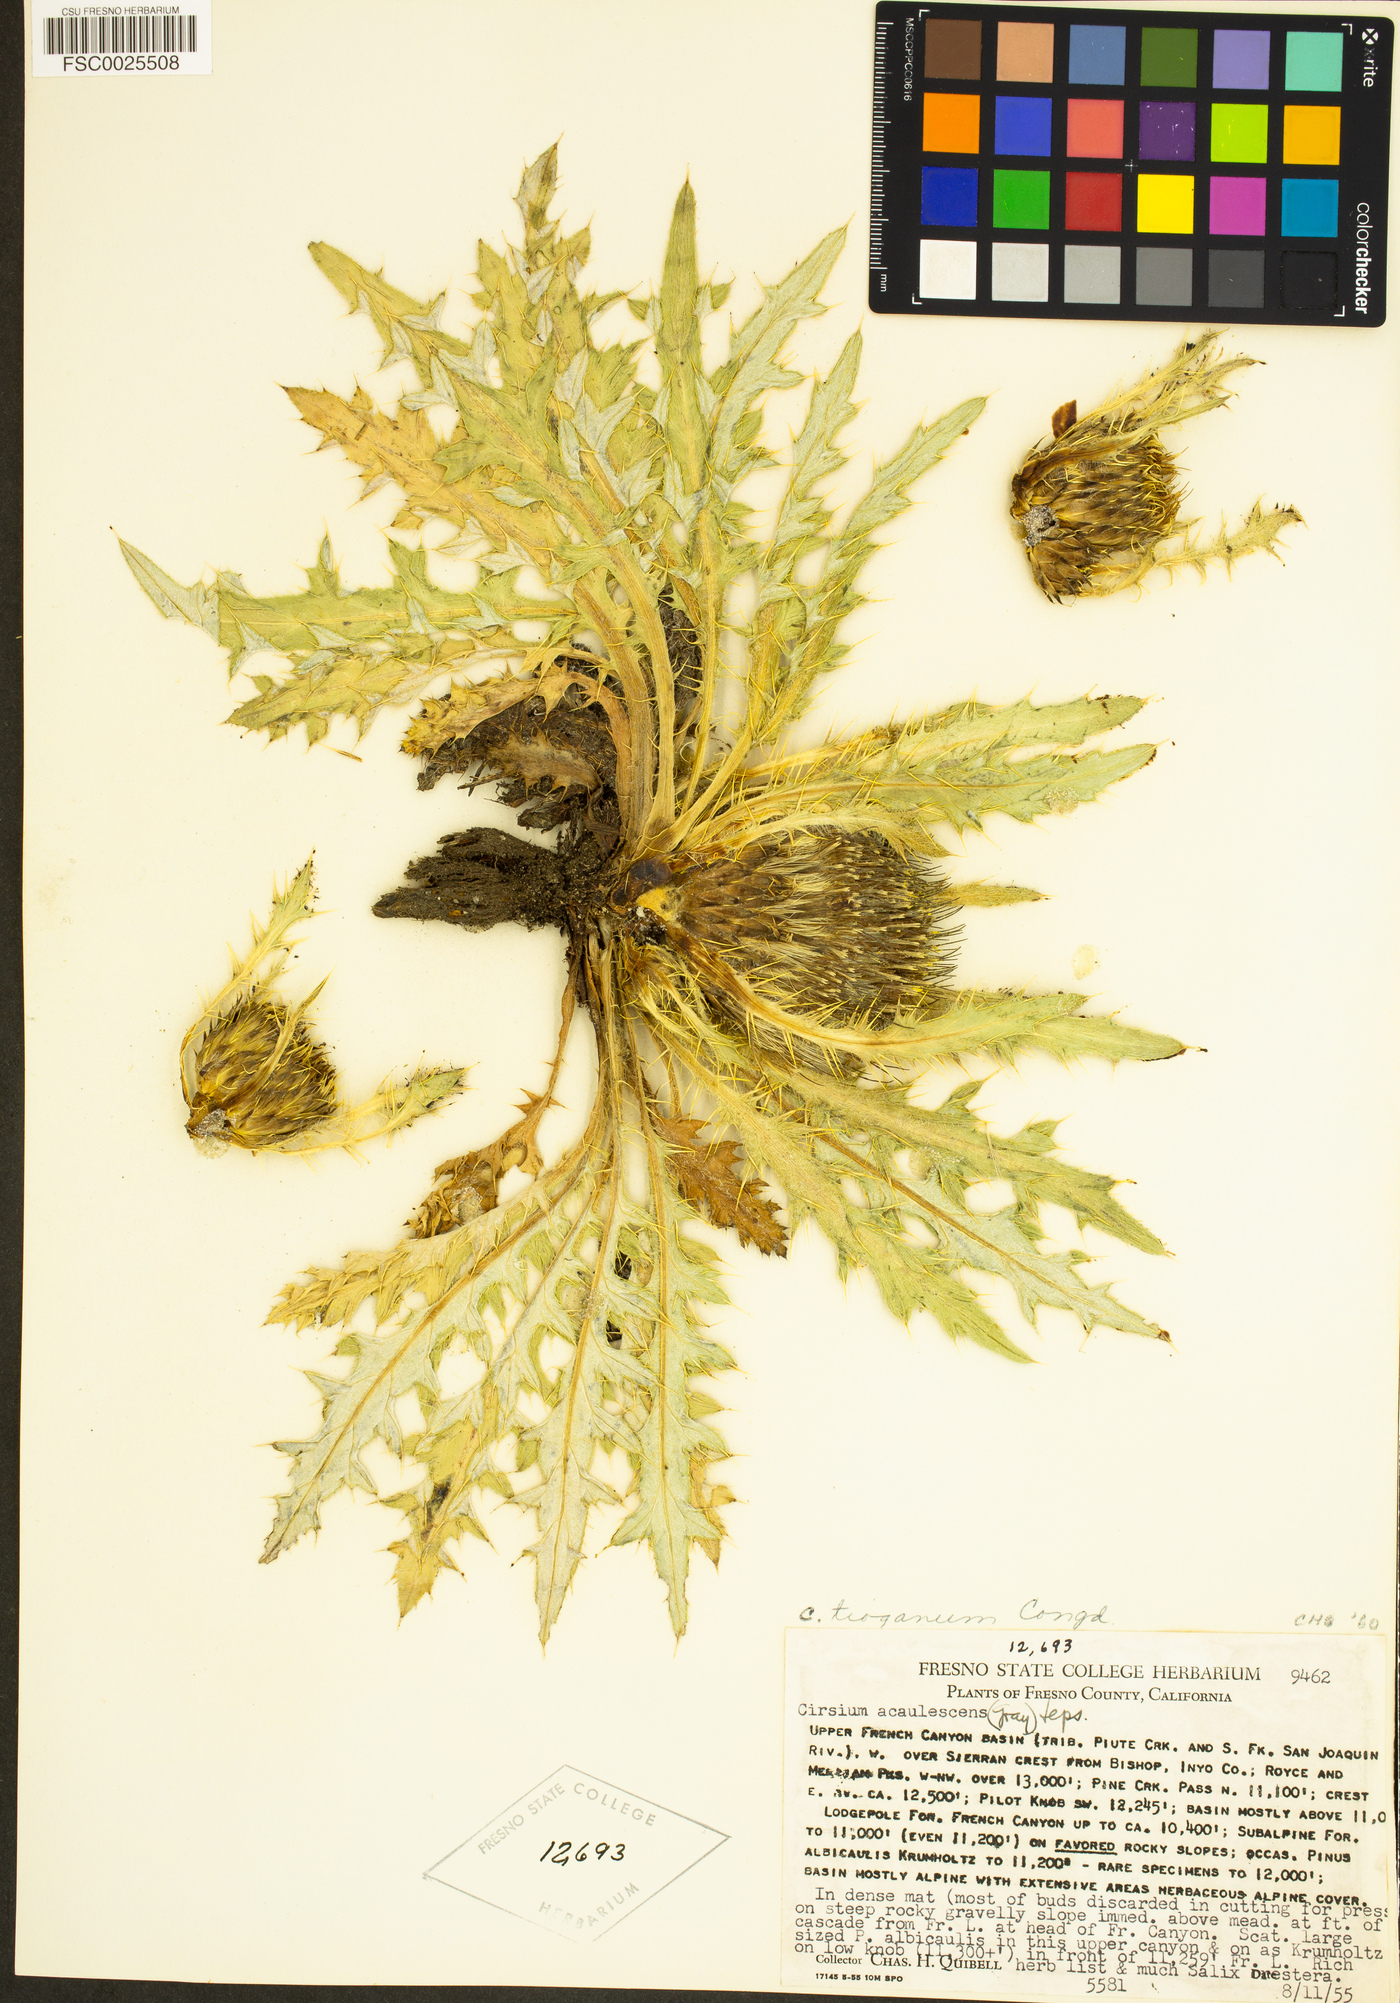 Cirsium scariosum var. congdonii image